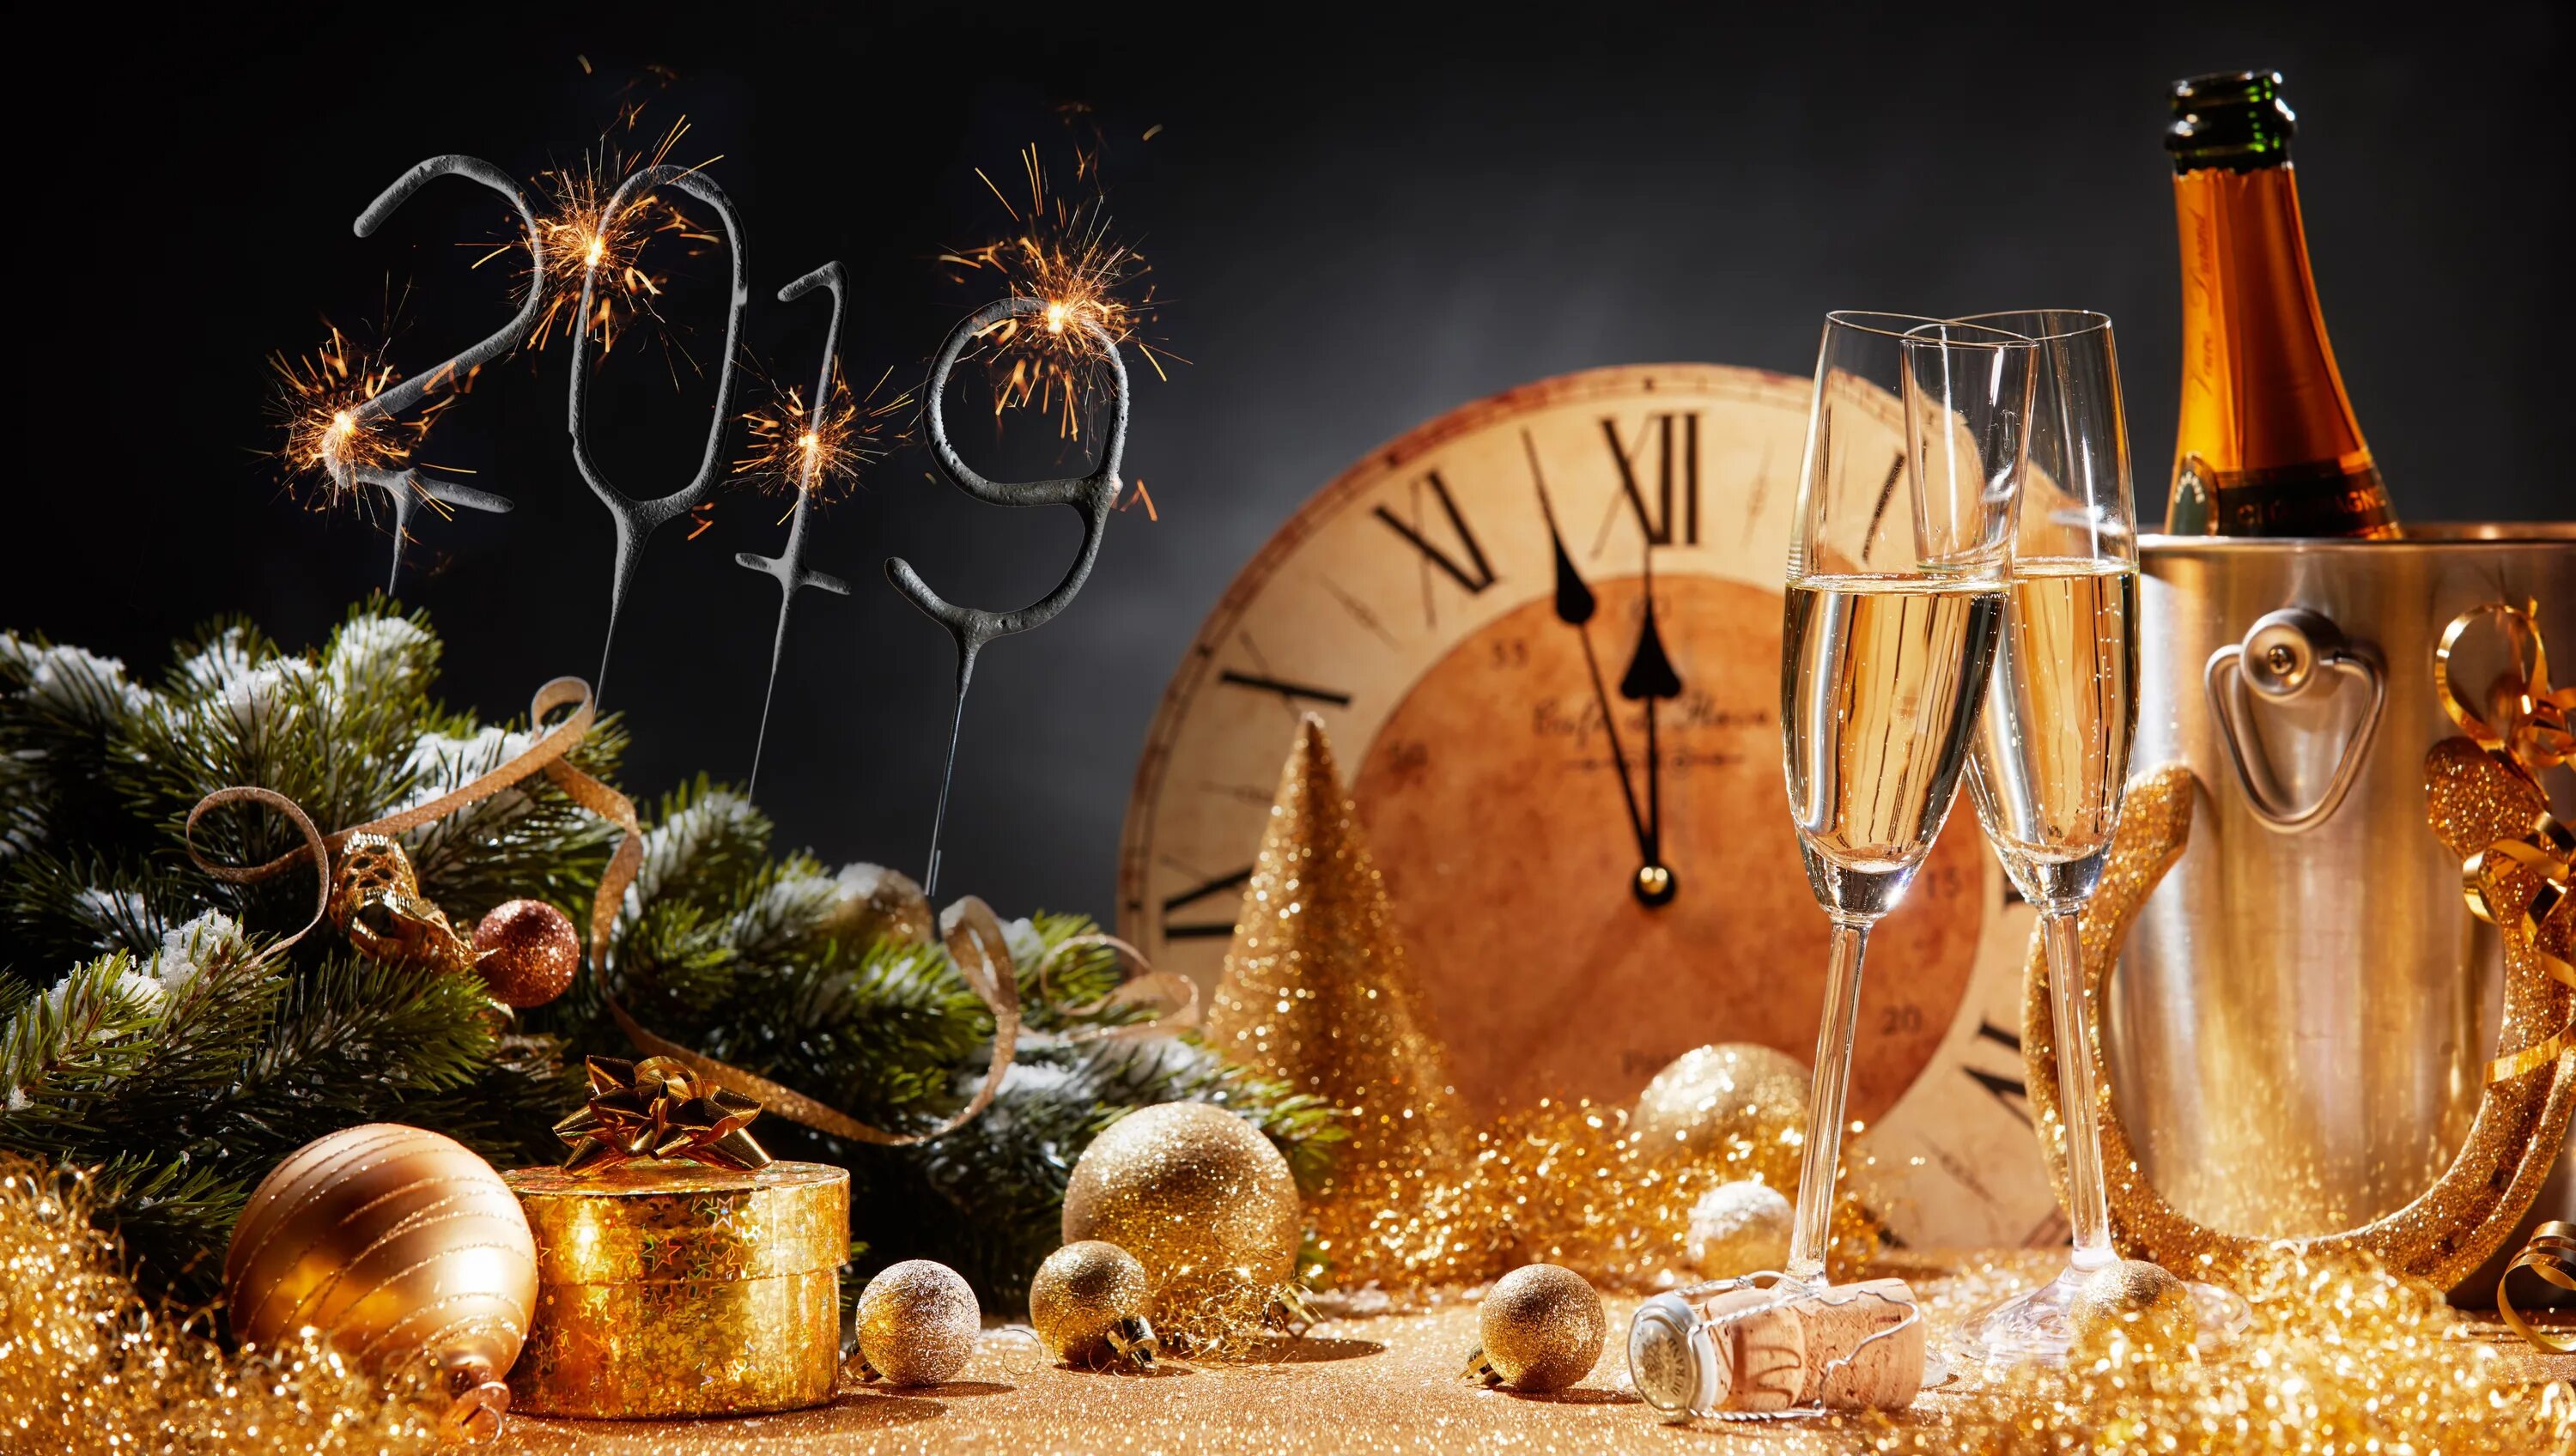 Новый год 2019 г. Шампанское новый год. Часы новогодние. Новогодние куранты и шампанское. Новогодний натюрморт с шампанским.